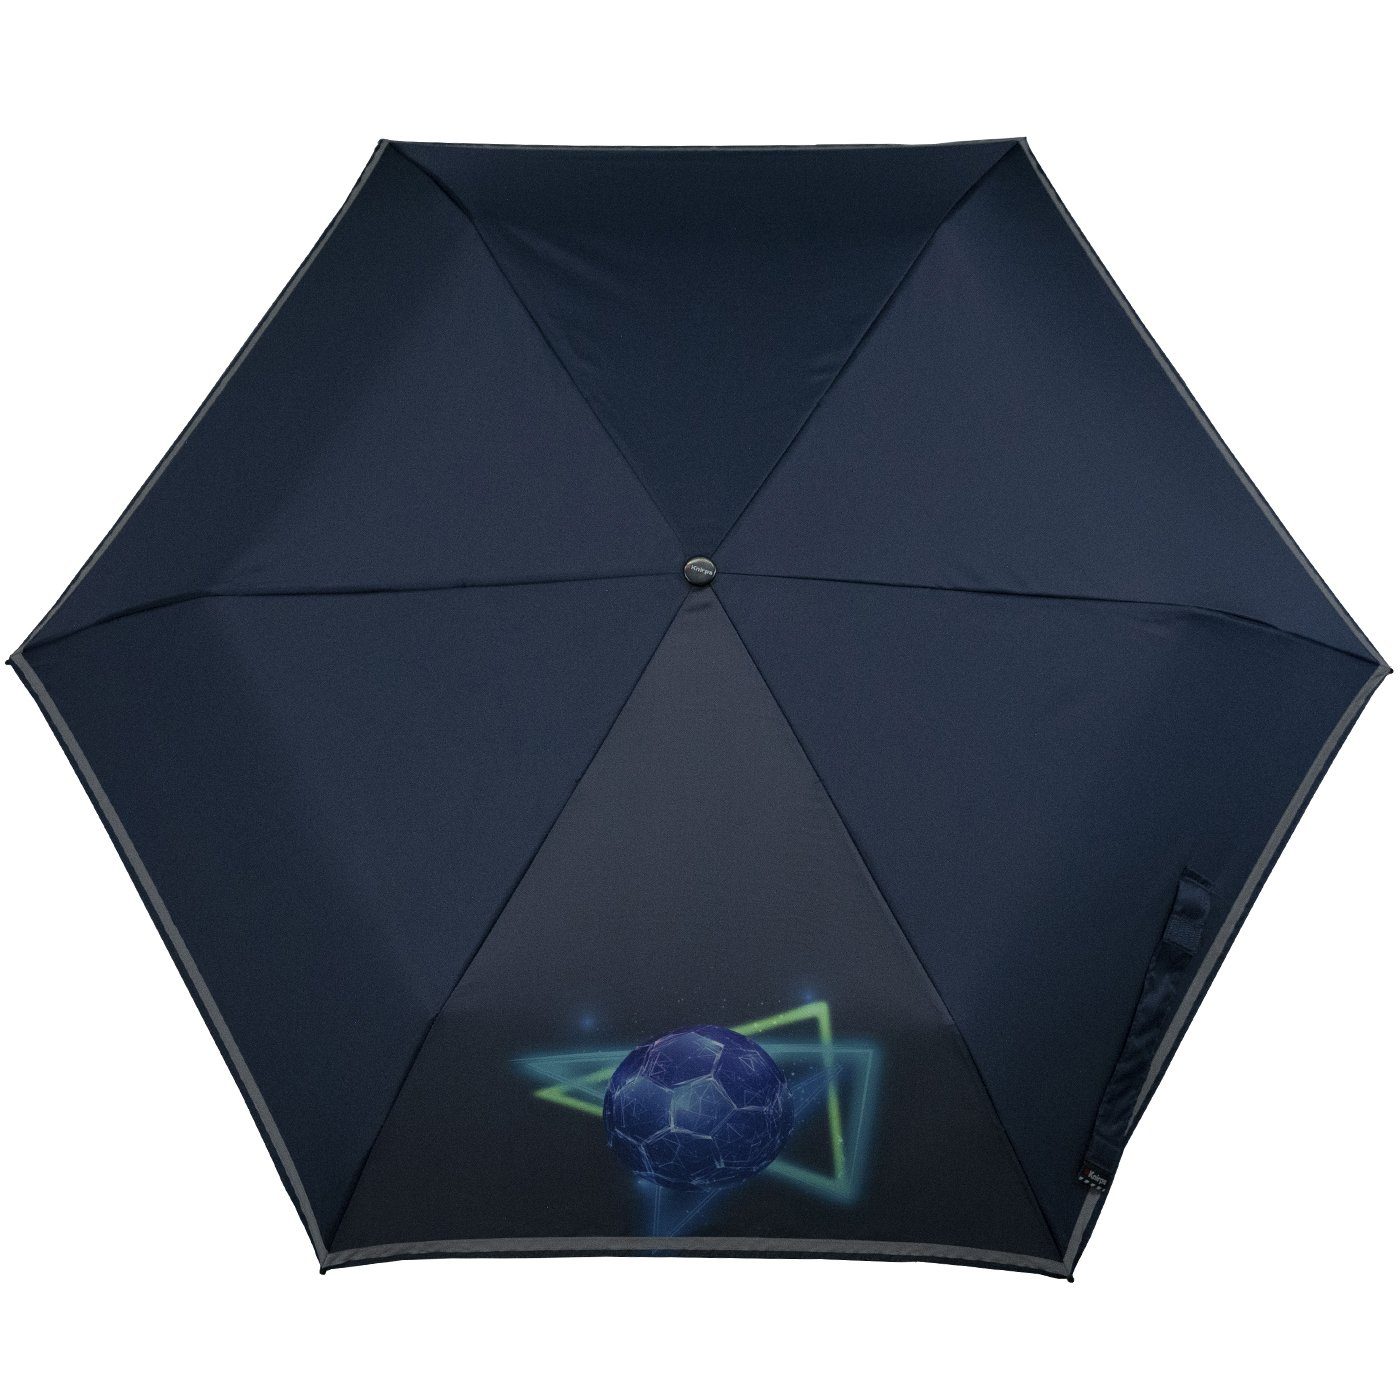 Taschenregenschirm Goal reflective dem 4Kids auf mit Knirps® Sicherheit Reflexborte, Kinderschirm Schulweg, blue Fussball,